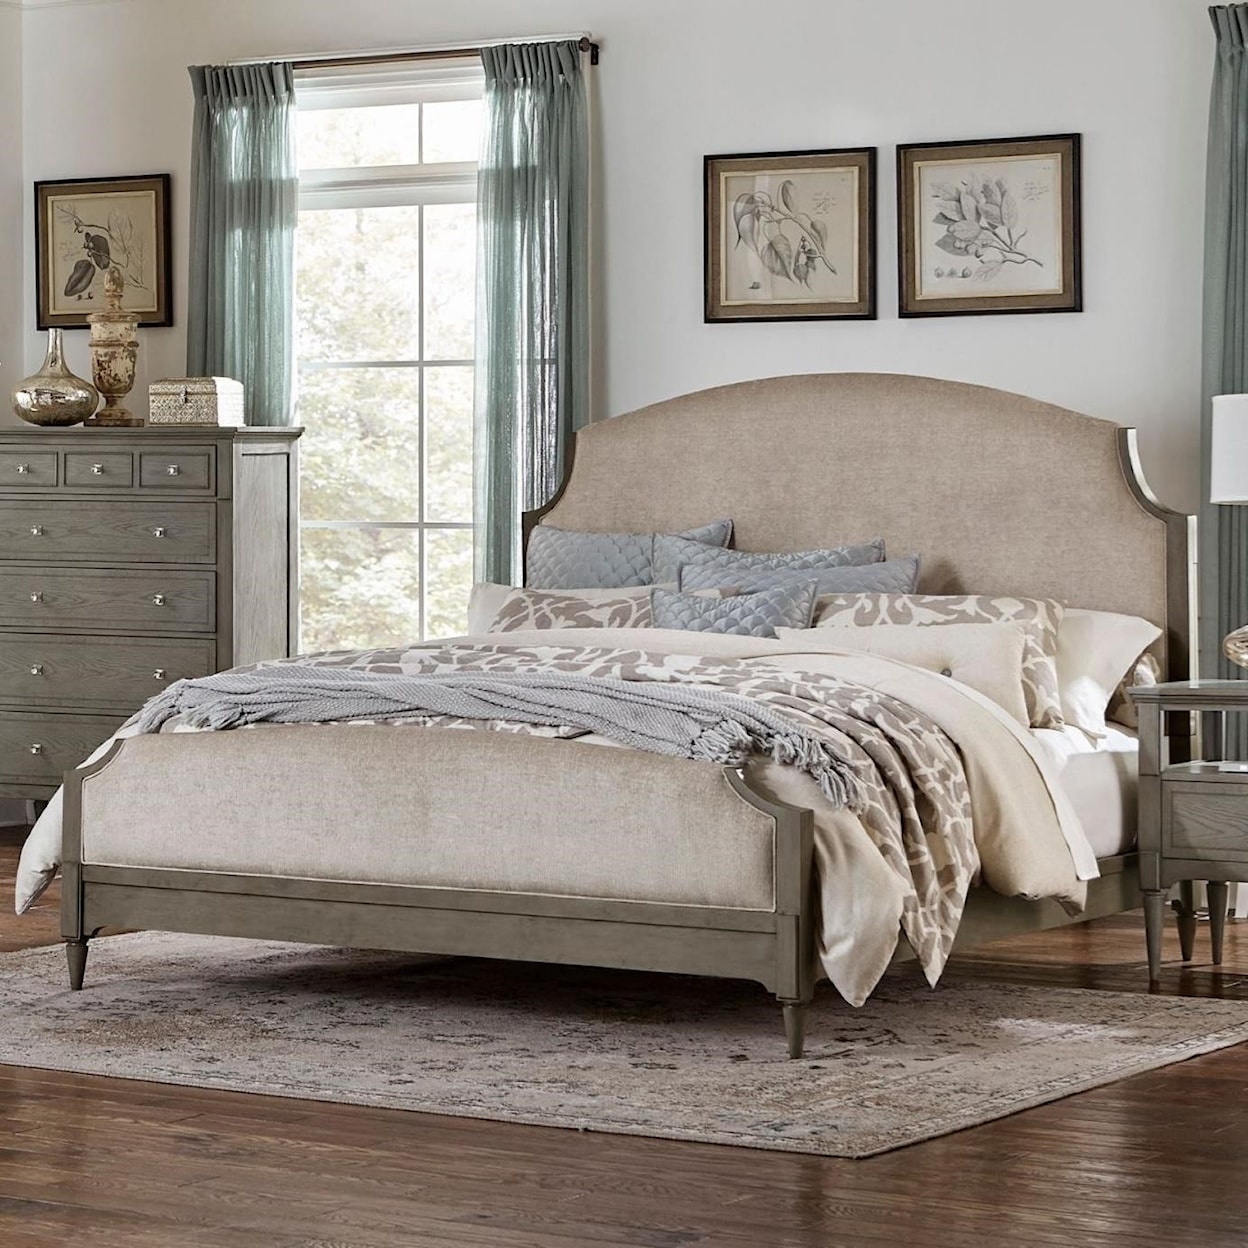 Homelegance Furniture Albright King Upholstered Panel Bed